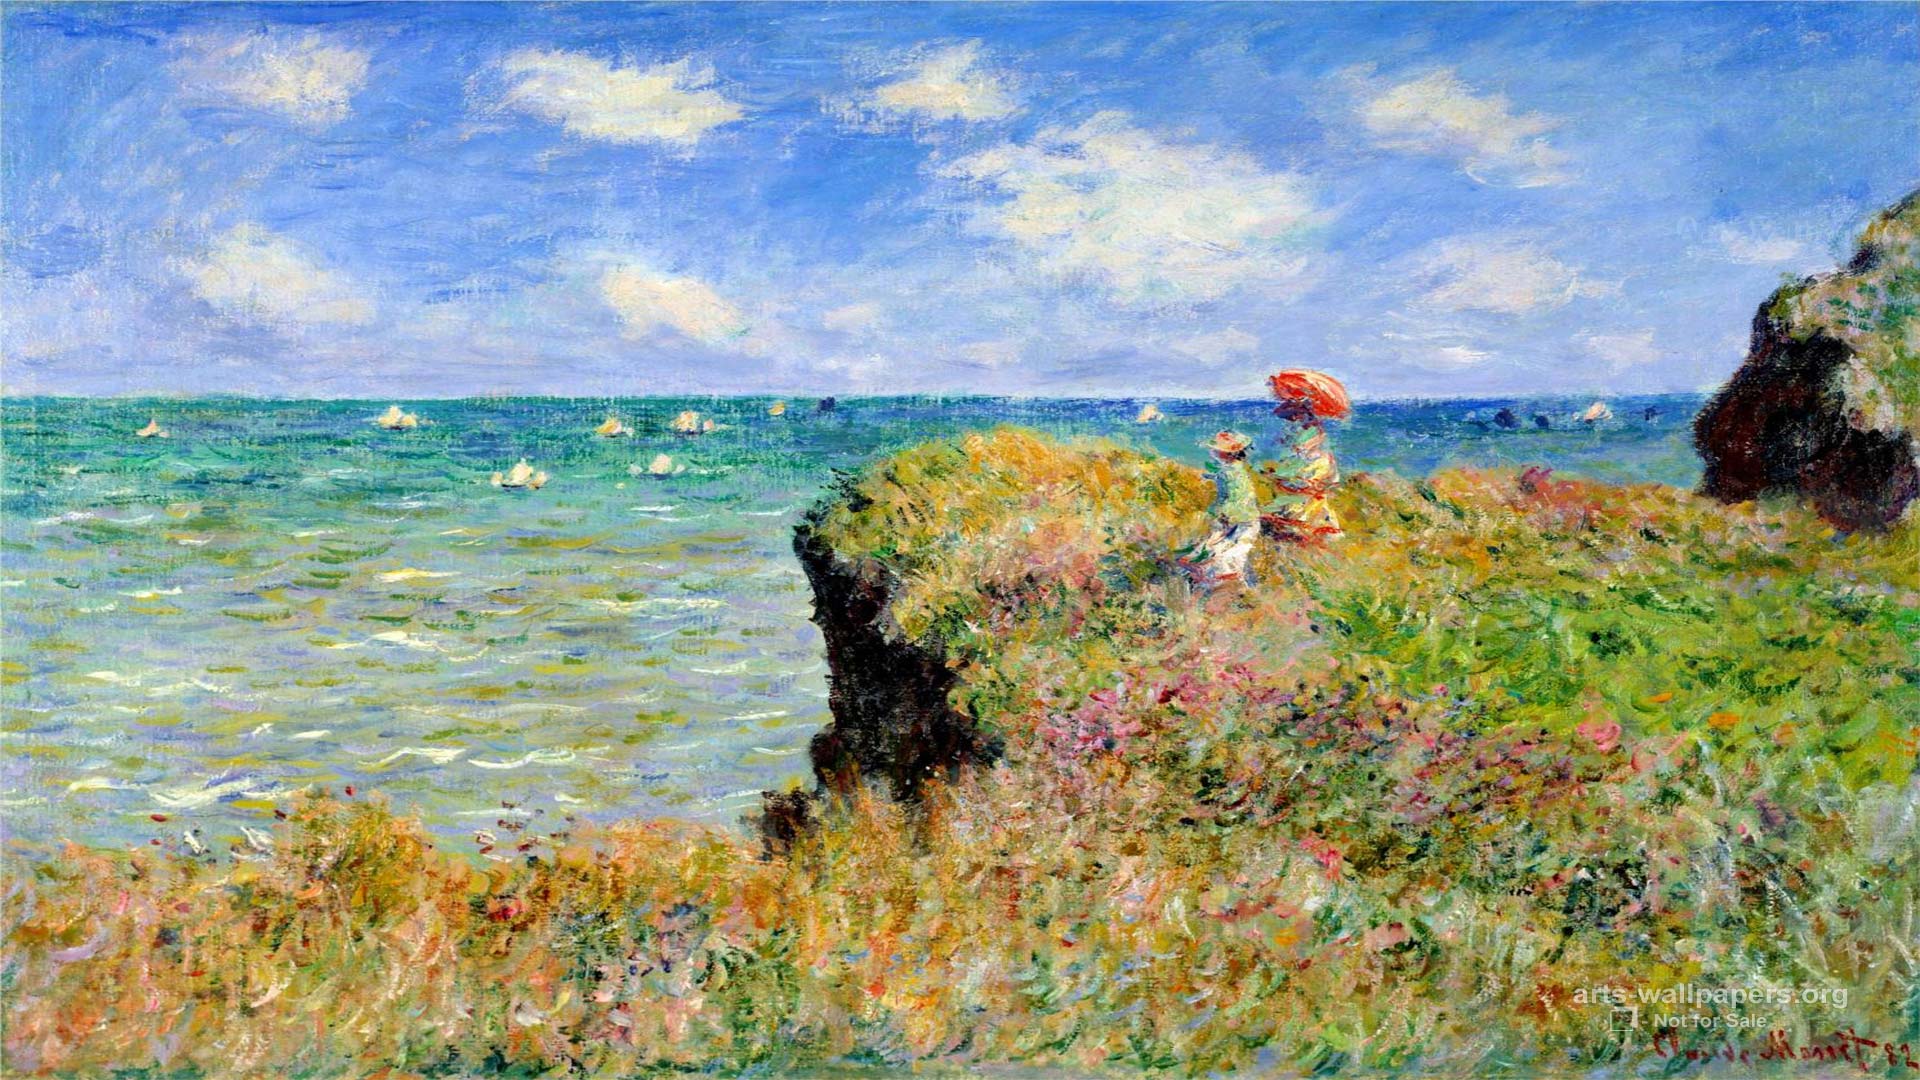 2. Claude Monet Impression Sunrise